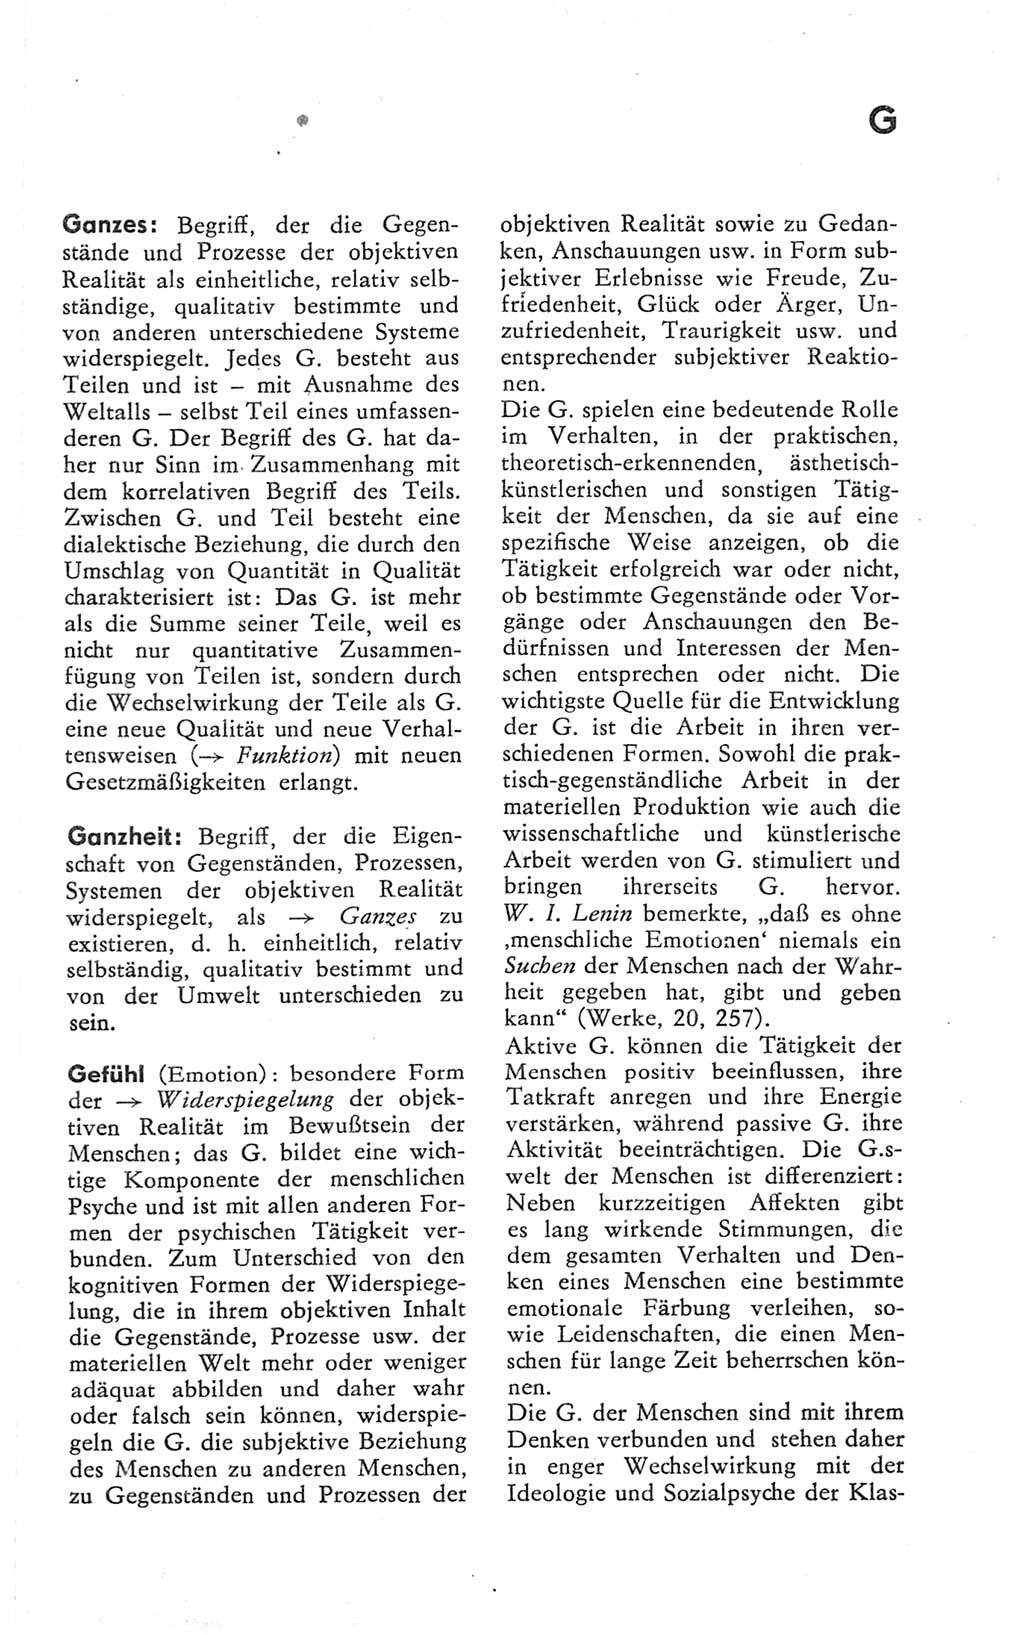 Kleines Wörterbuch der marxistisch-leninistischen Philosophie [Deutsche Demokratische Republik (DDR)] 1981, Seite 123 (Kl. Wb. ML Phil. DDR 1981, S. 123)